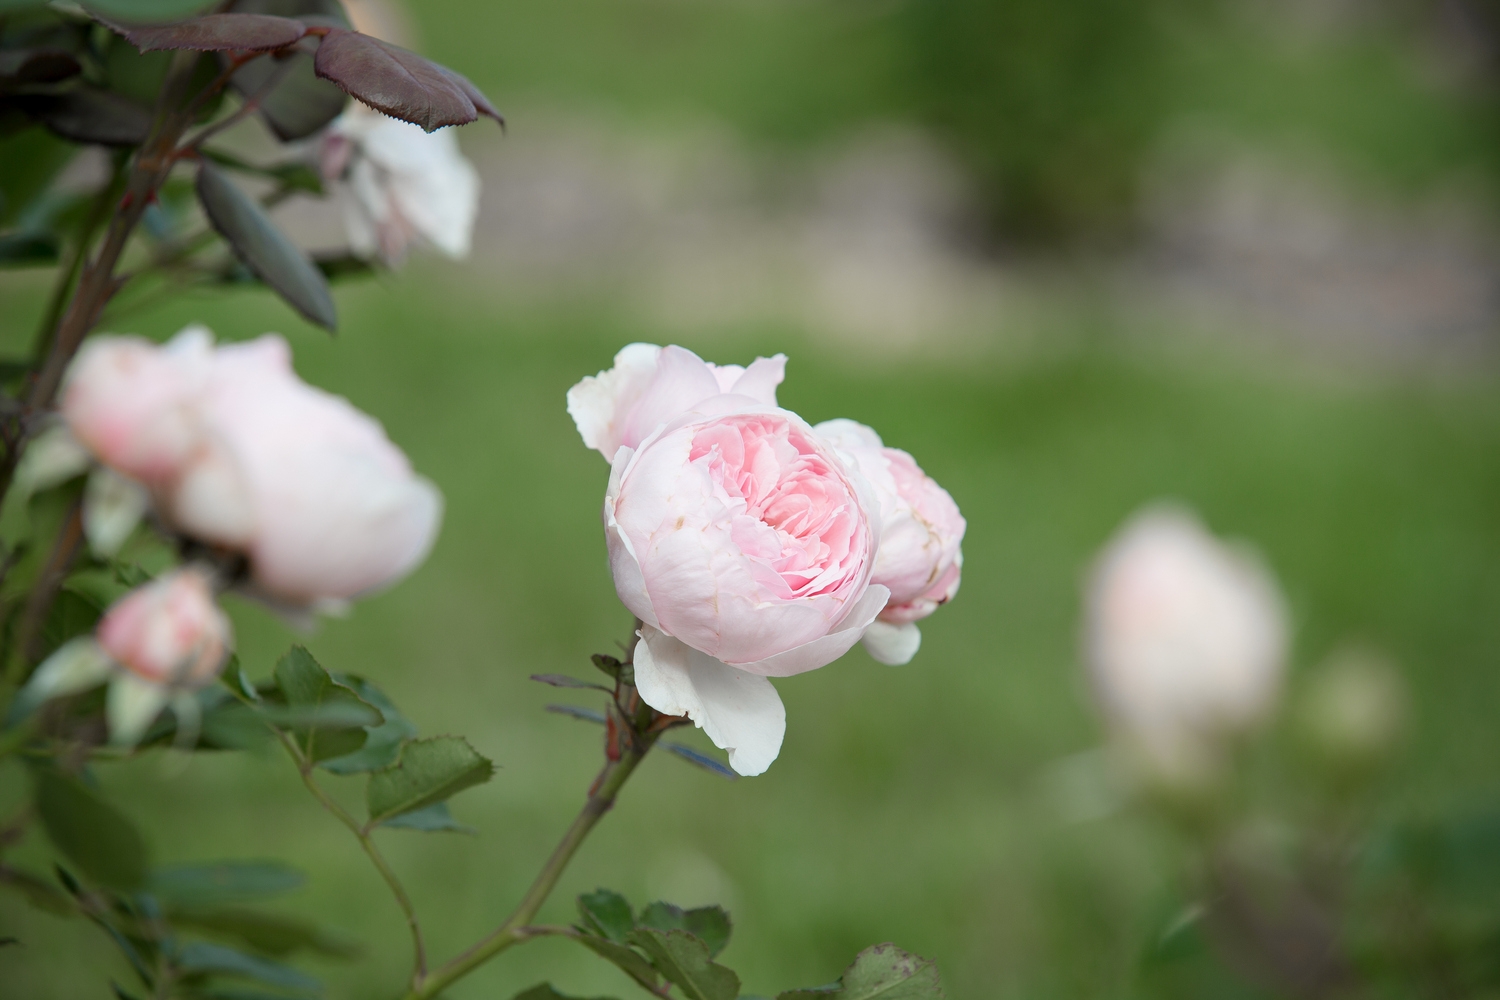 Rožu kolekcijas dārzs "Rozītes"Sēmes pagastā